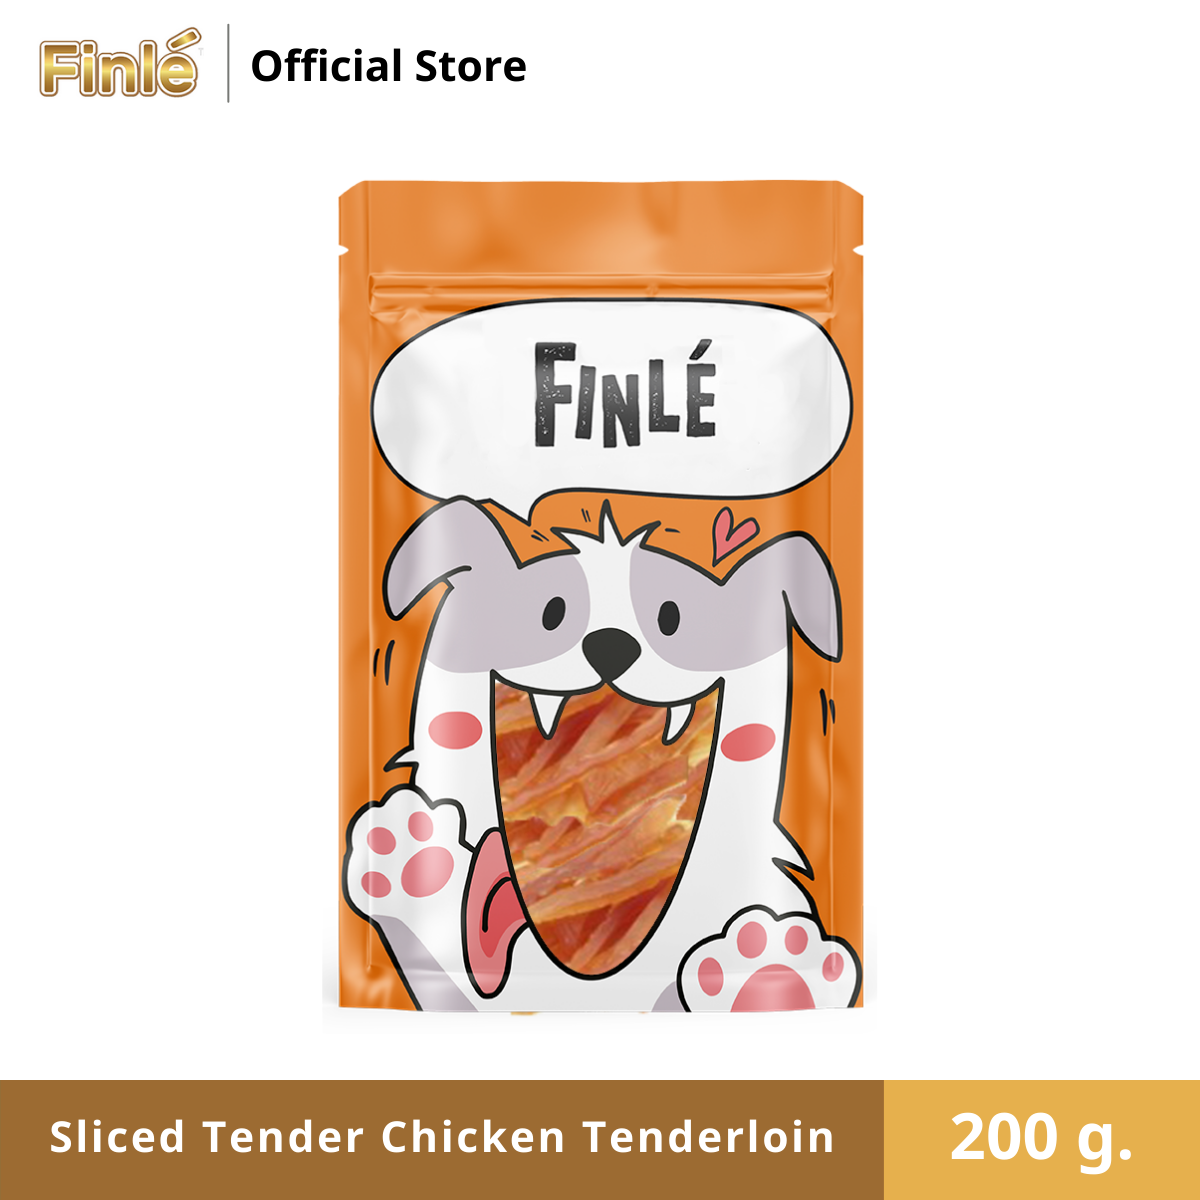 Finle Sliced Tender Chicken Tenderloin 200 g. ฟินเล สันในไก่นุ่มสไลด์ ขนาด 200 กรัม